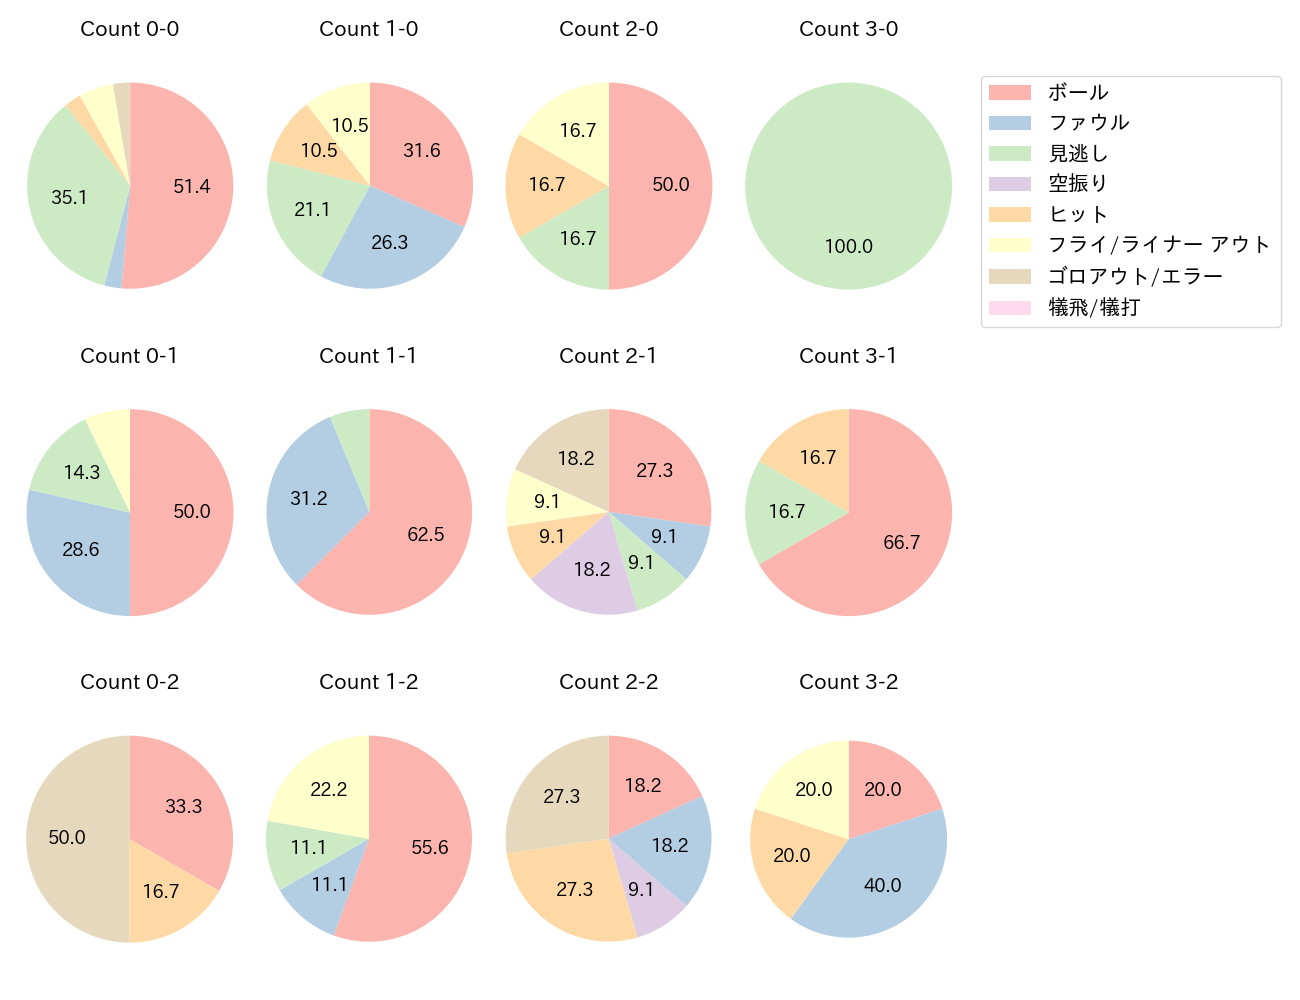 中村 悠平の球数分布(2021年8月)